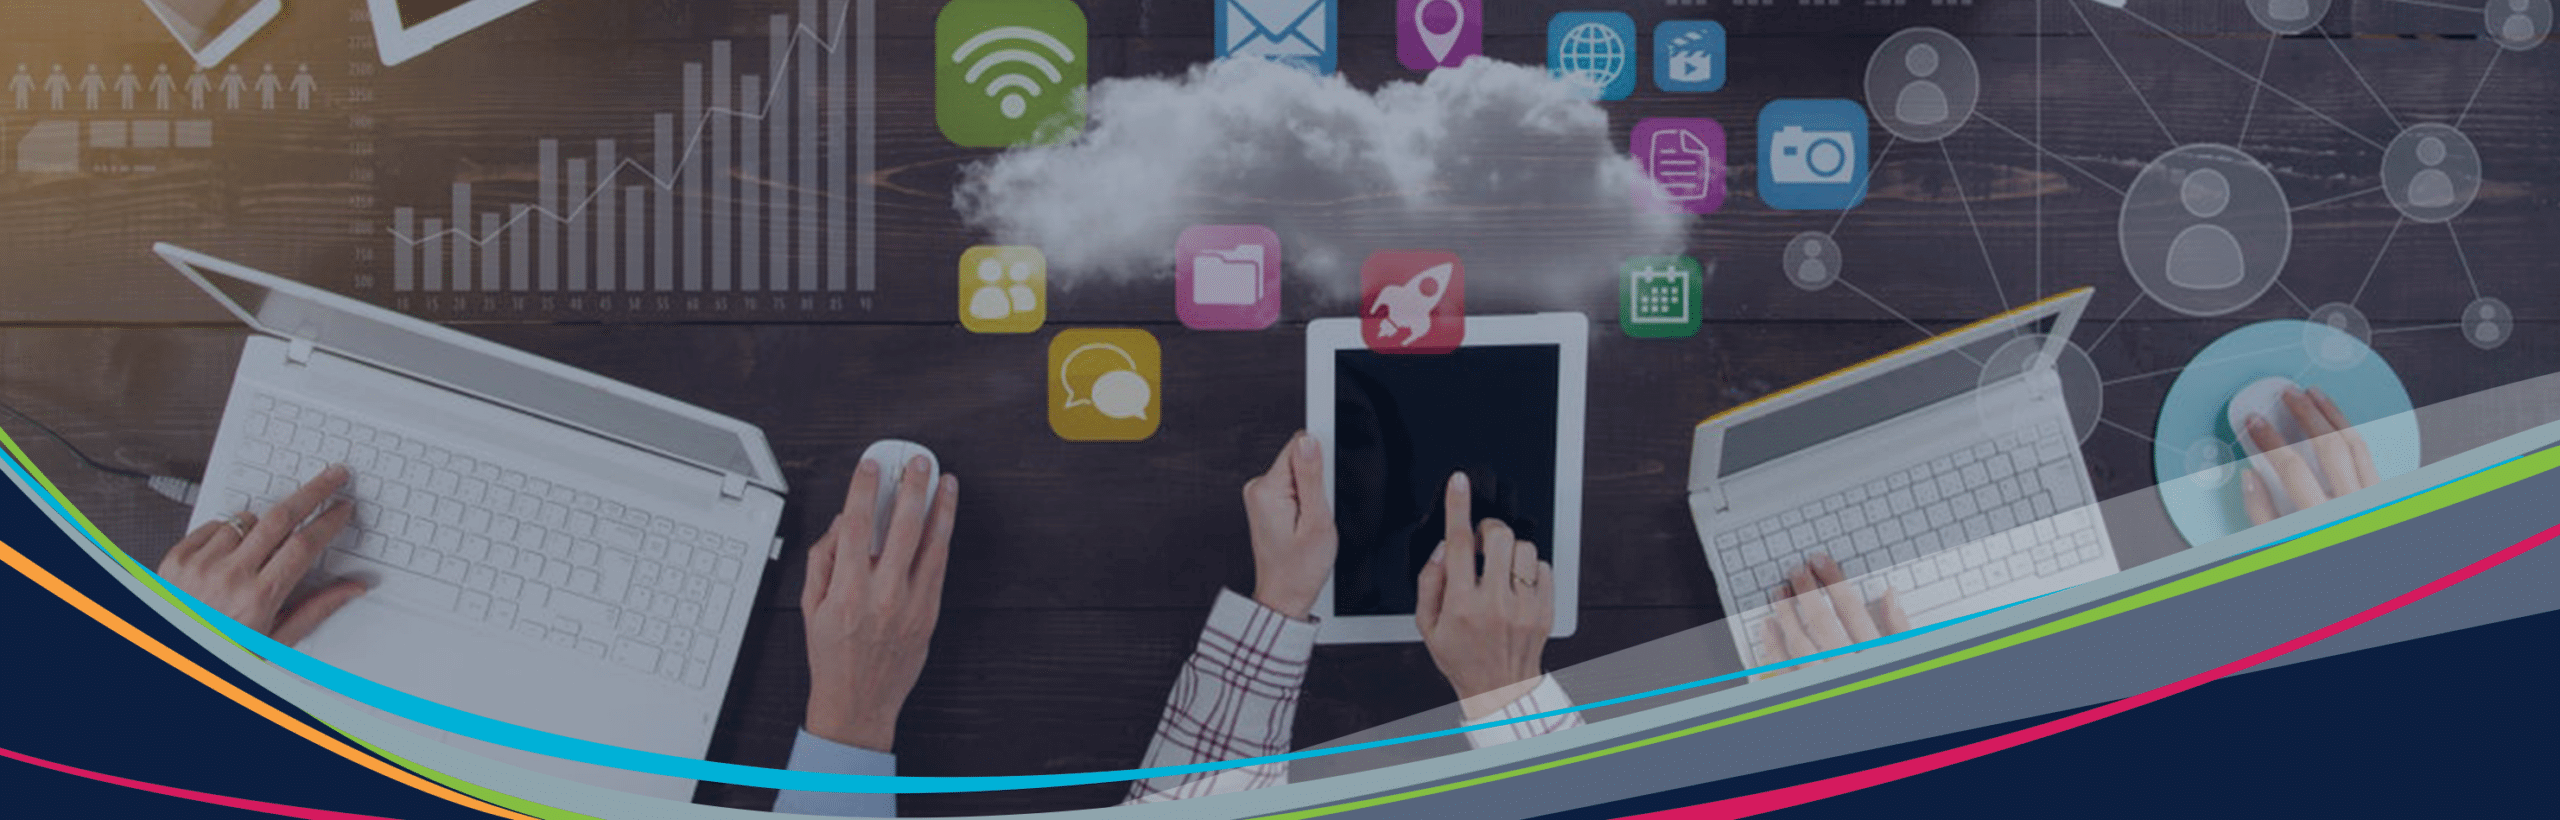 Imagem principal de BYOD e IoT de alunos interagindo com dispositivos mostrando ícones de tecnologia